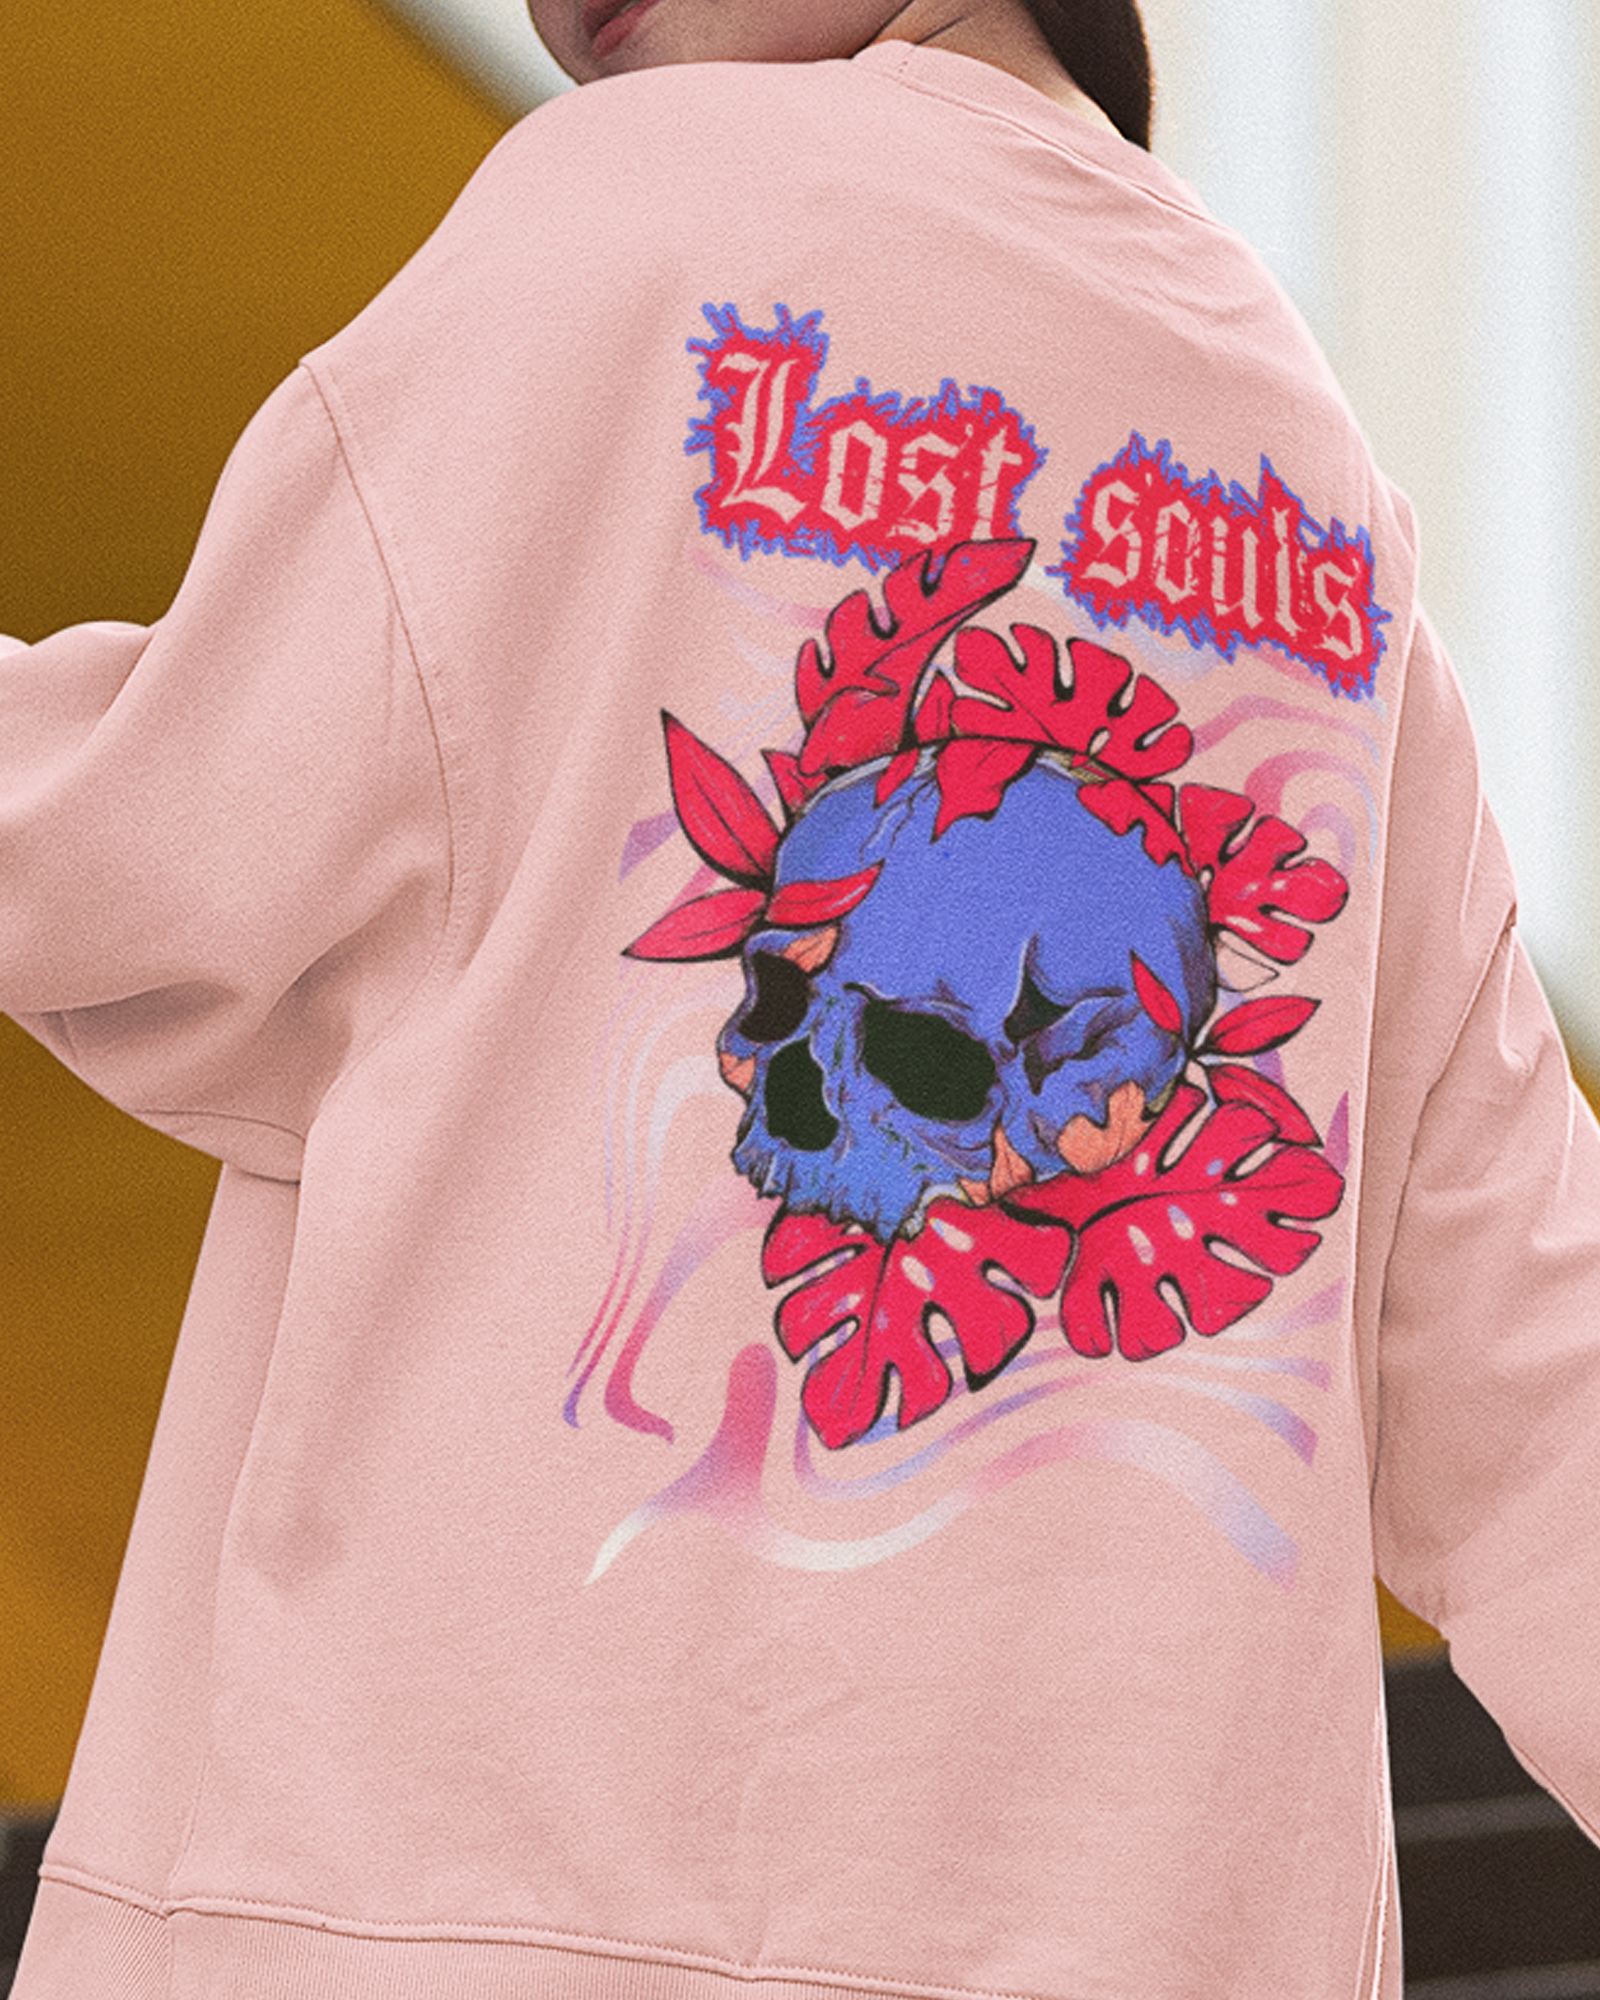 Lost Souls Sweatshirt